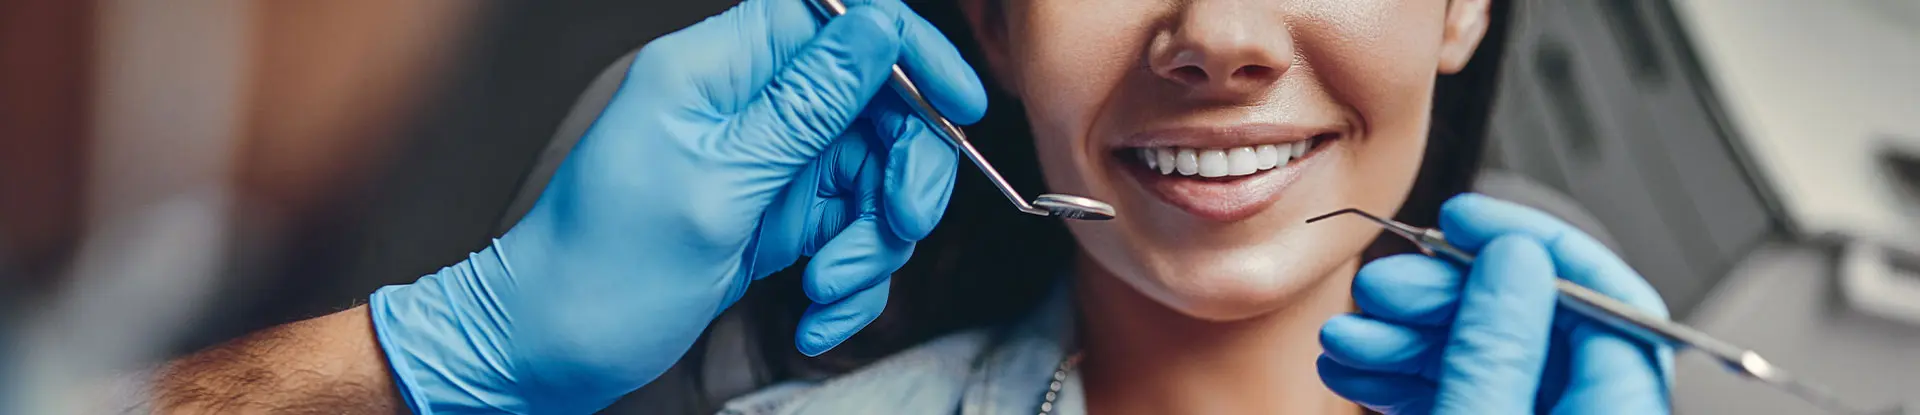 Chirurgiens-dentistes traitant une patiente - La Communauté MACSF